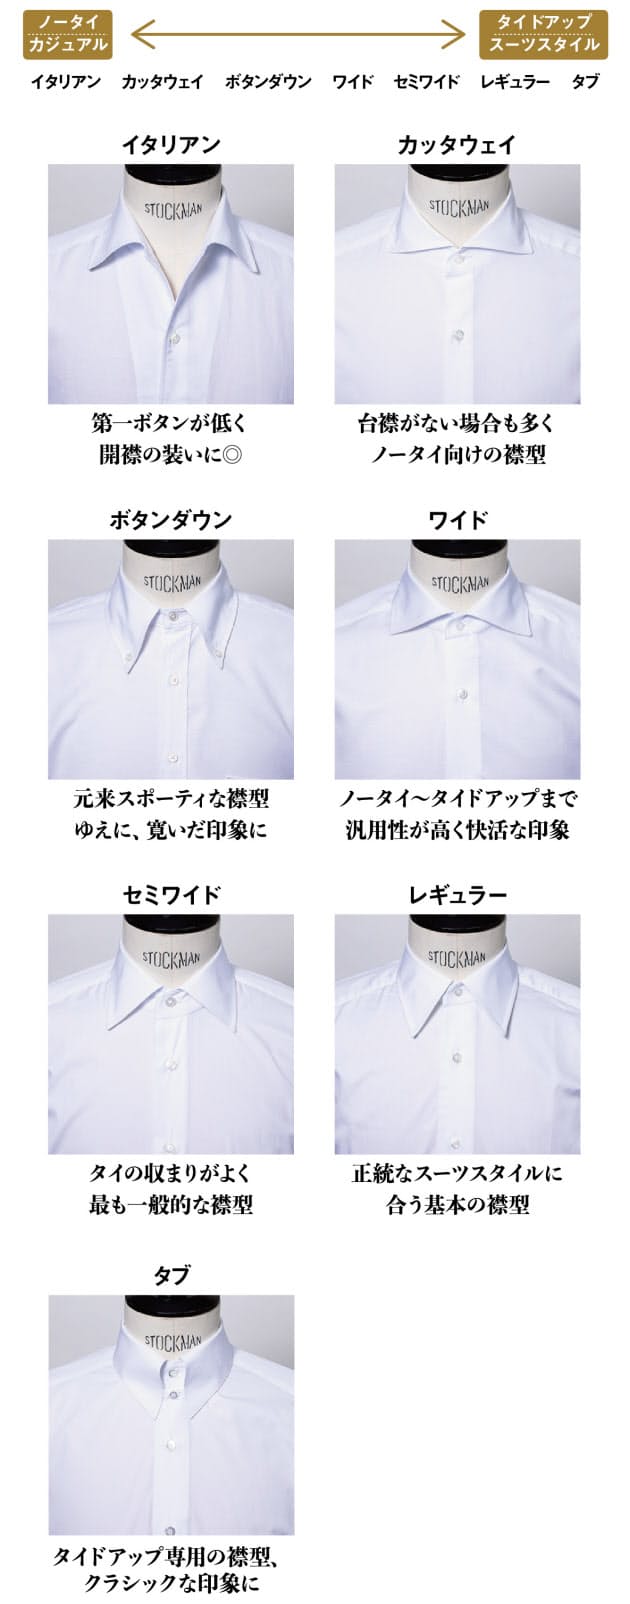 リモートスタイルの鍵はシャツ ノータイをおしゃれに Nikkei Style